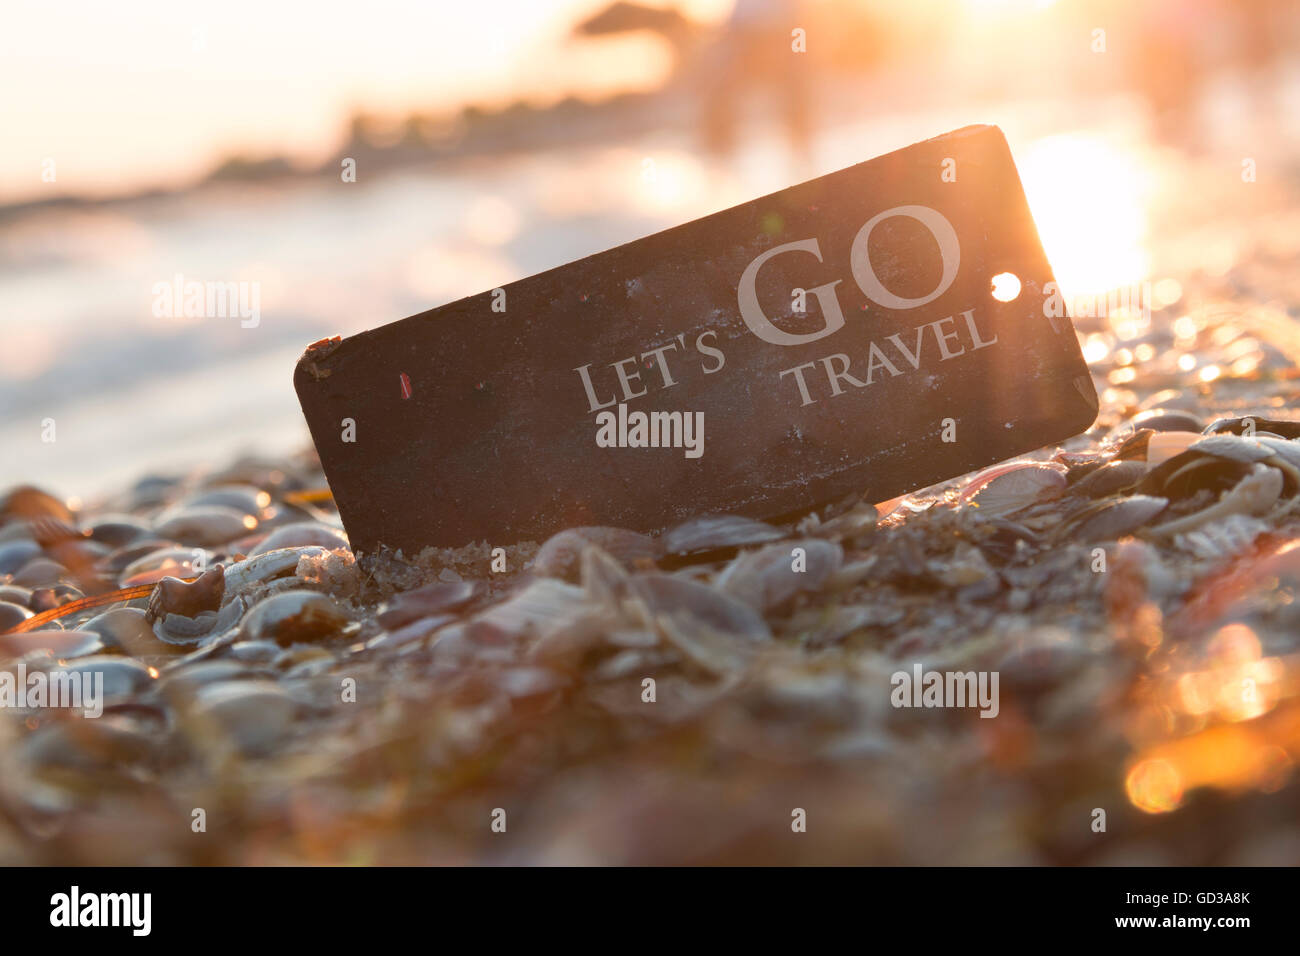 Lets Go Travel idea, avventura motivazione concetto, Foto Stock